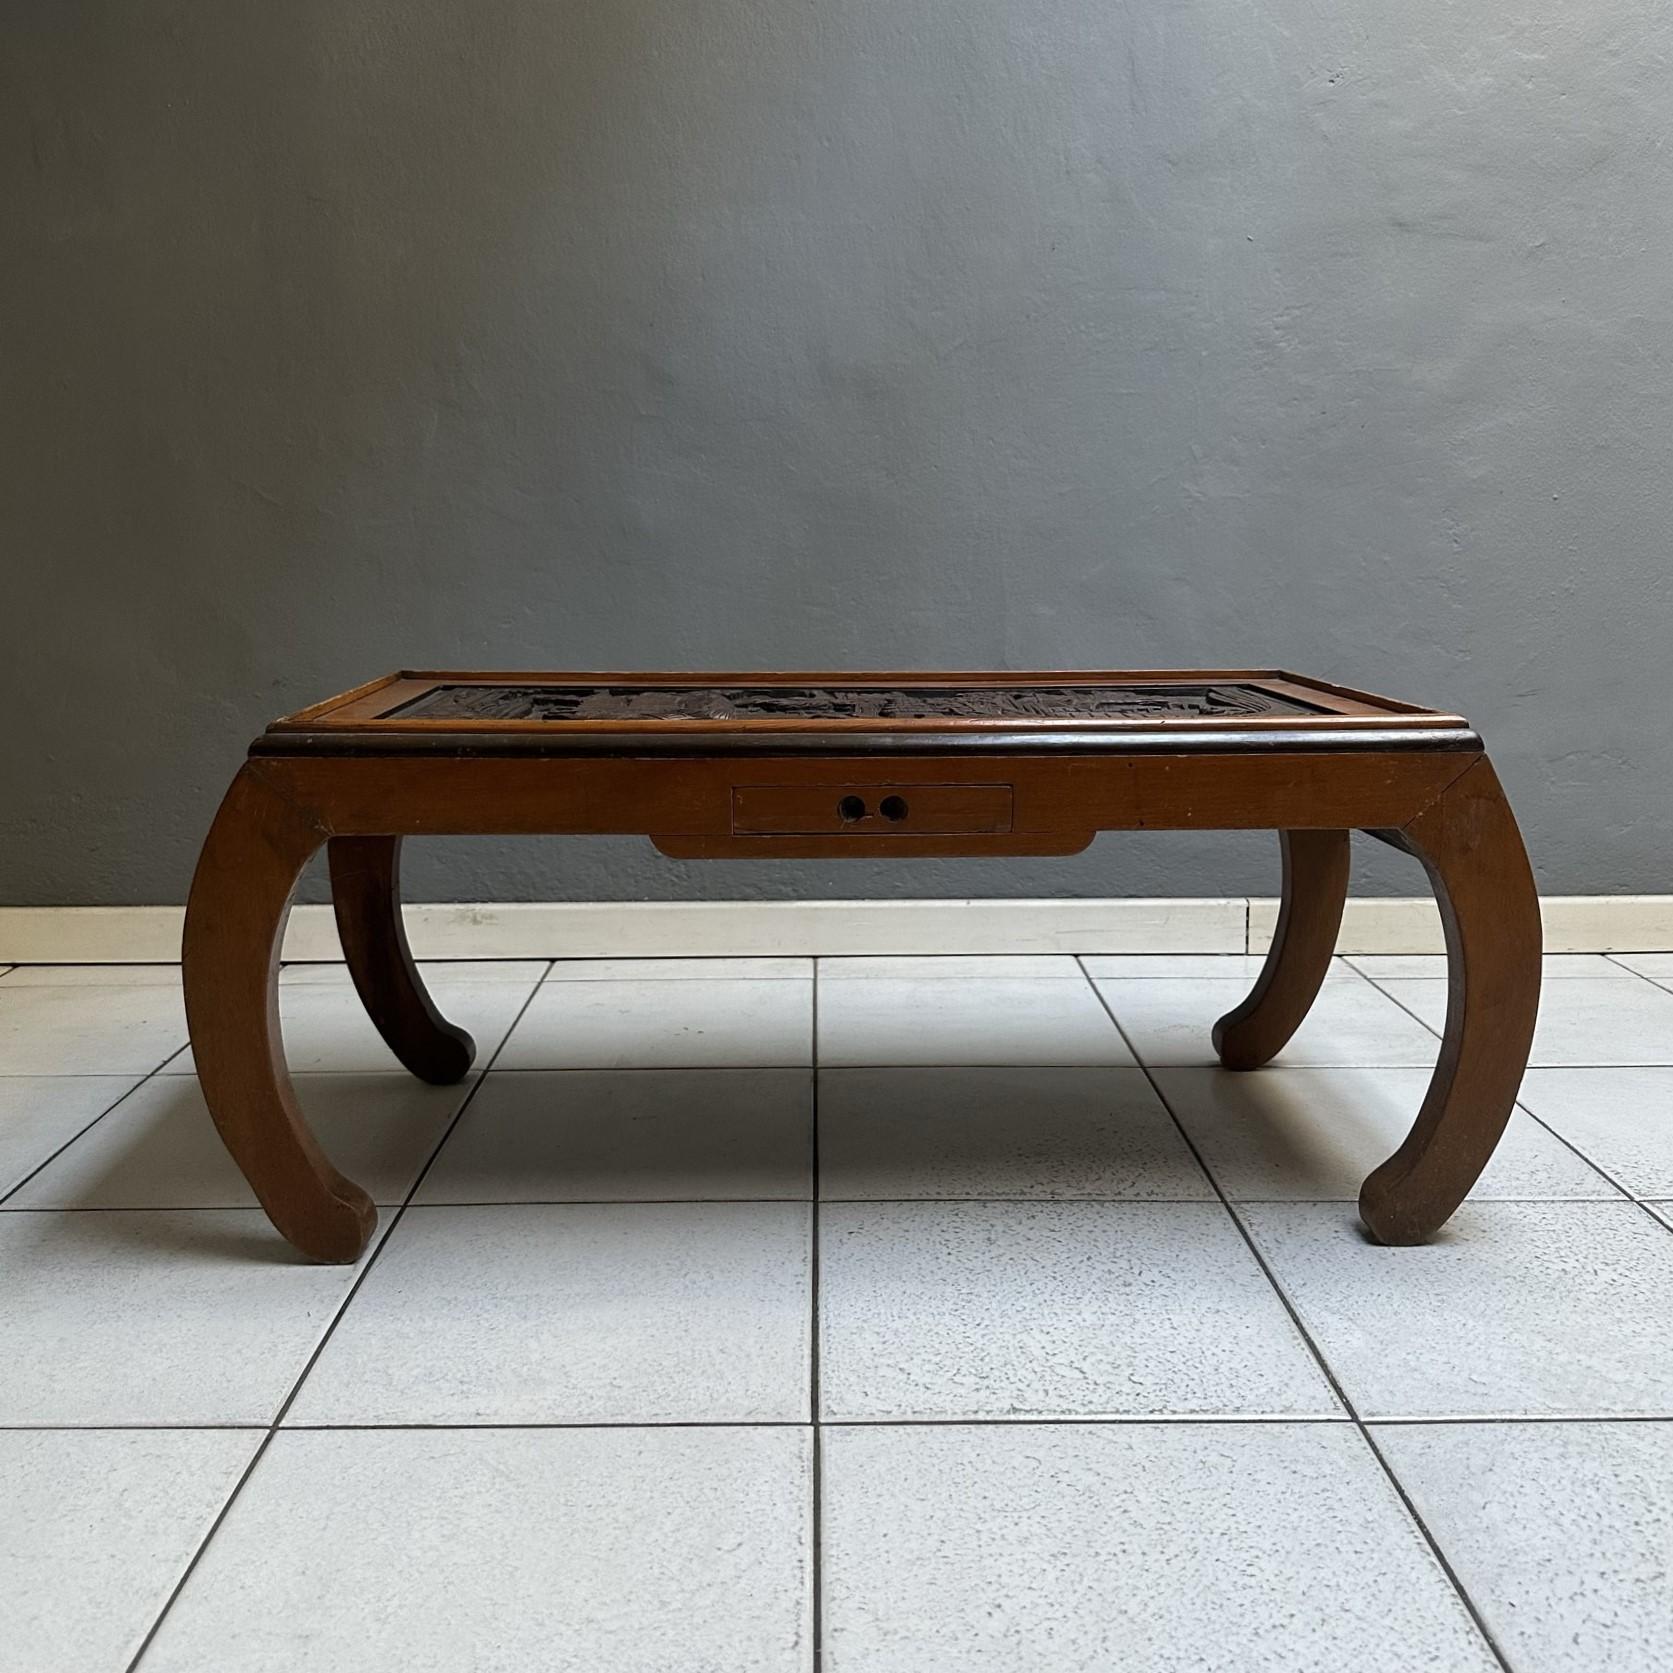 Table basse rectangulaire des années 70, fabrication chinoise.
La structure est en bois incrusté de décorations orientales typiques, probablement utilisée comme table à thé.
La table possède un petit tiroir sur le devant. Sur la photo, vous pouvez